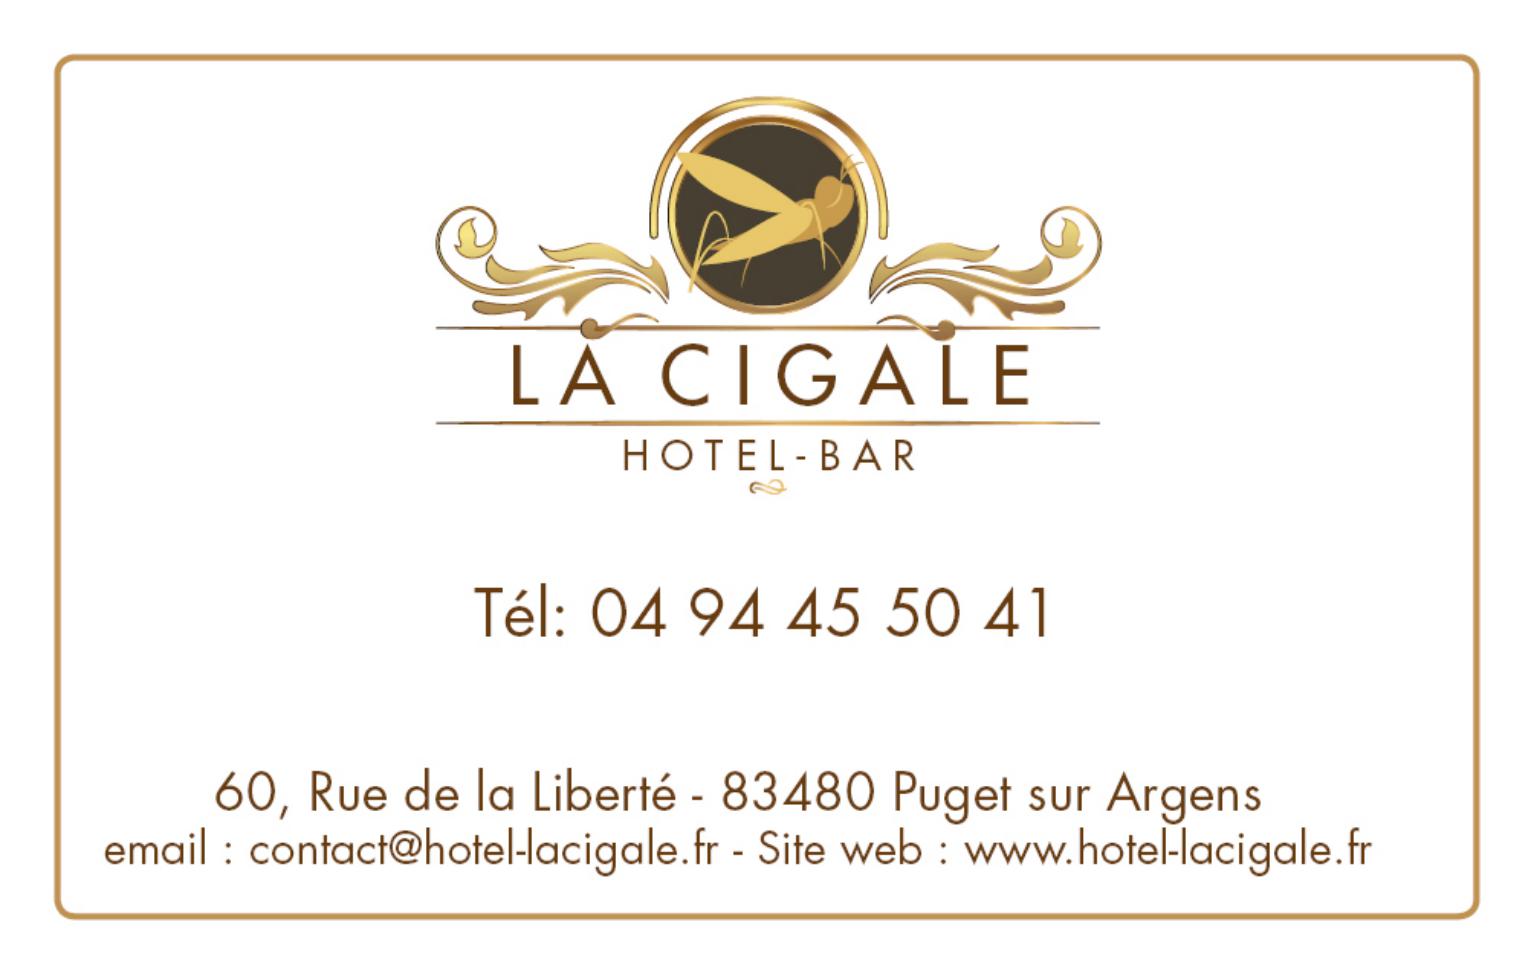 La Cigale , hotel restaurant - logo charte graphique, enseigne